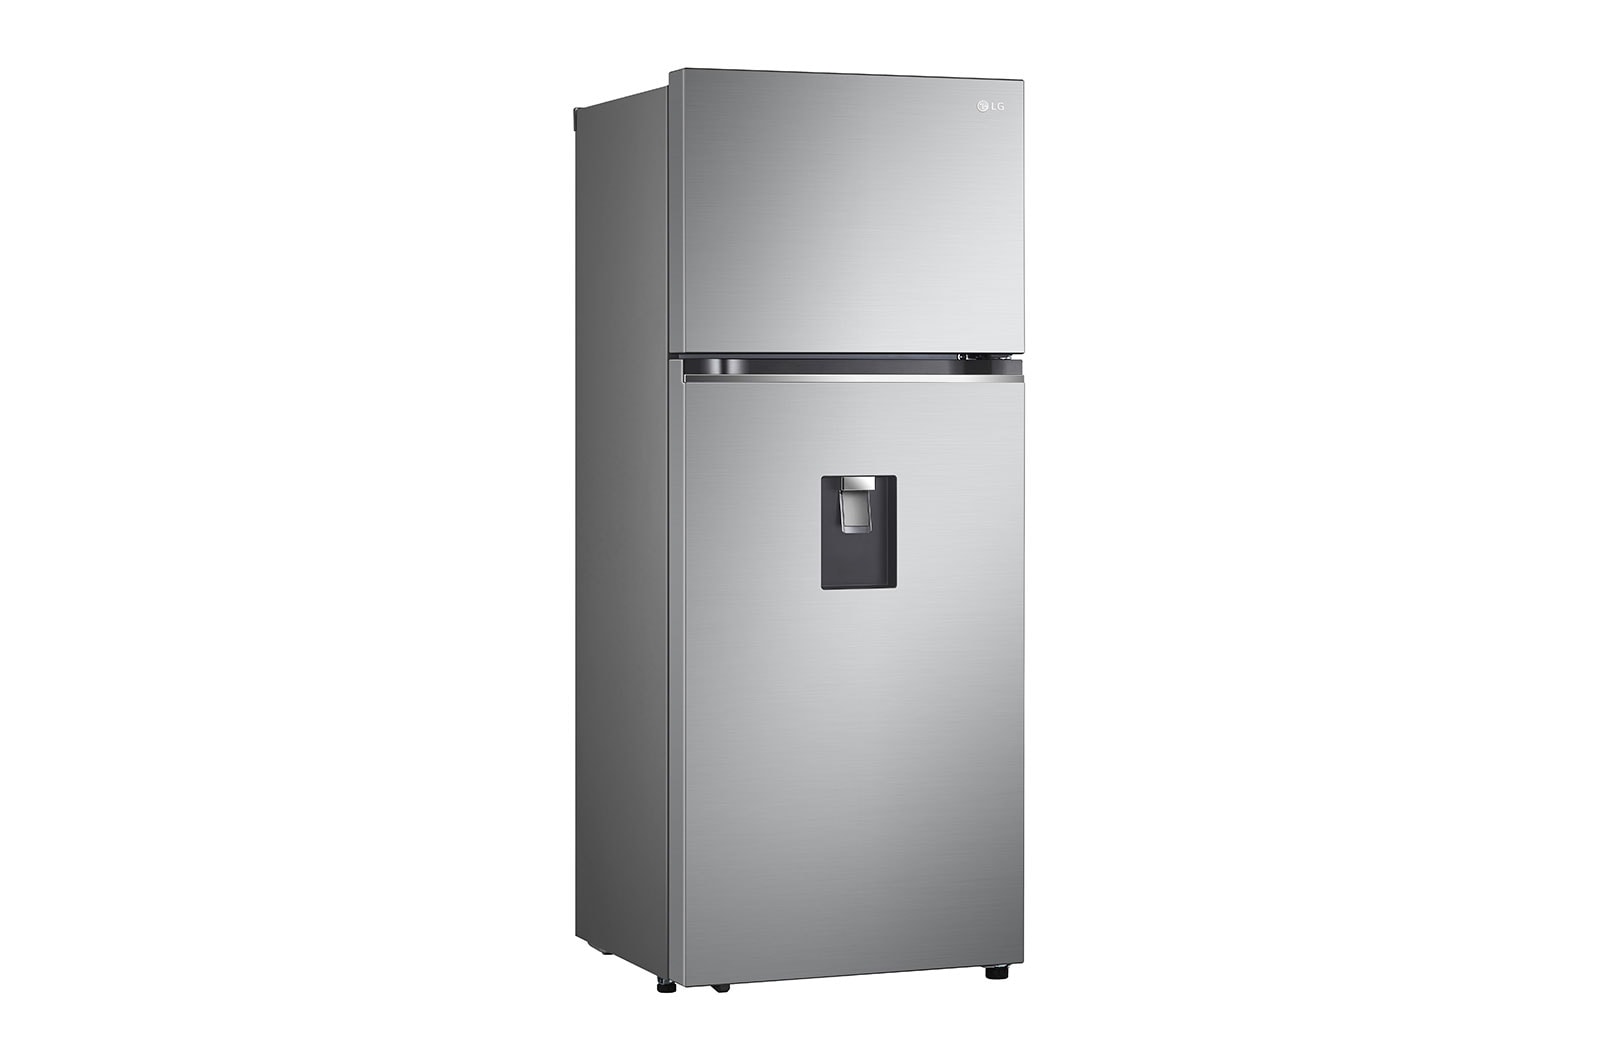 LG Refrigeradora de puerta francesa 14.3pᶟ LRKNS1400V